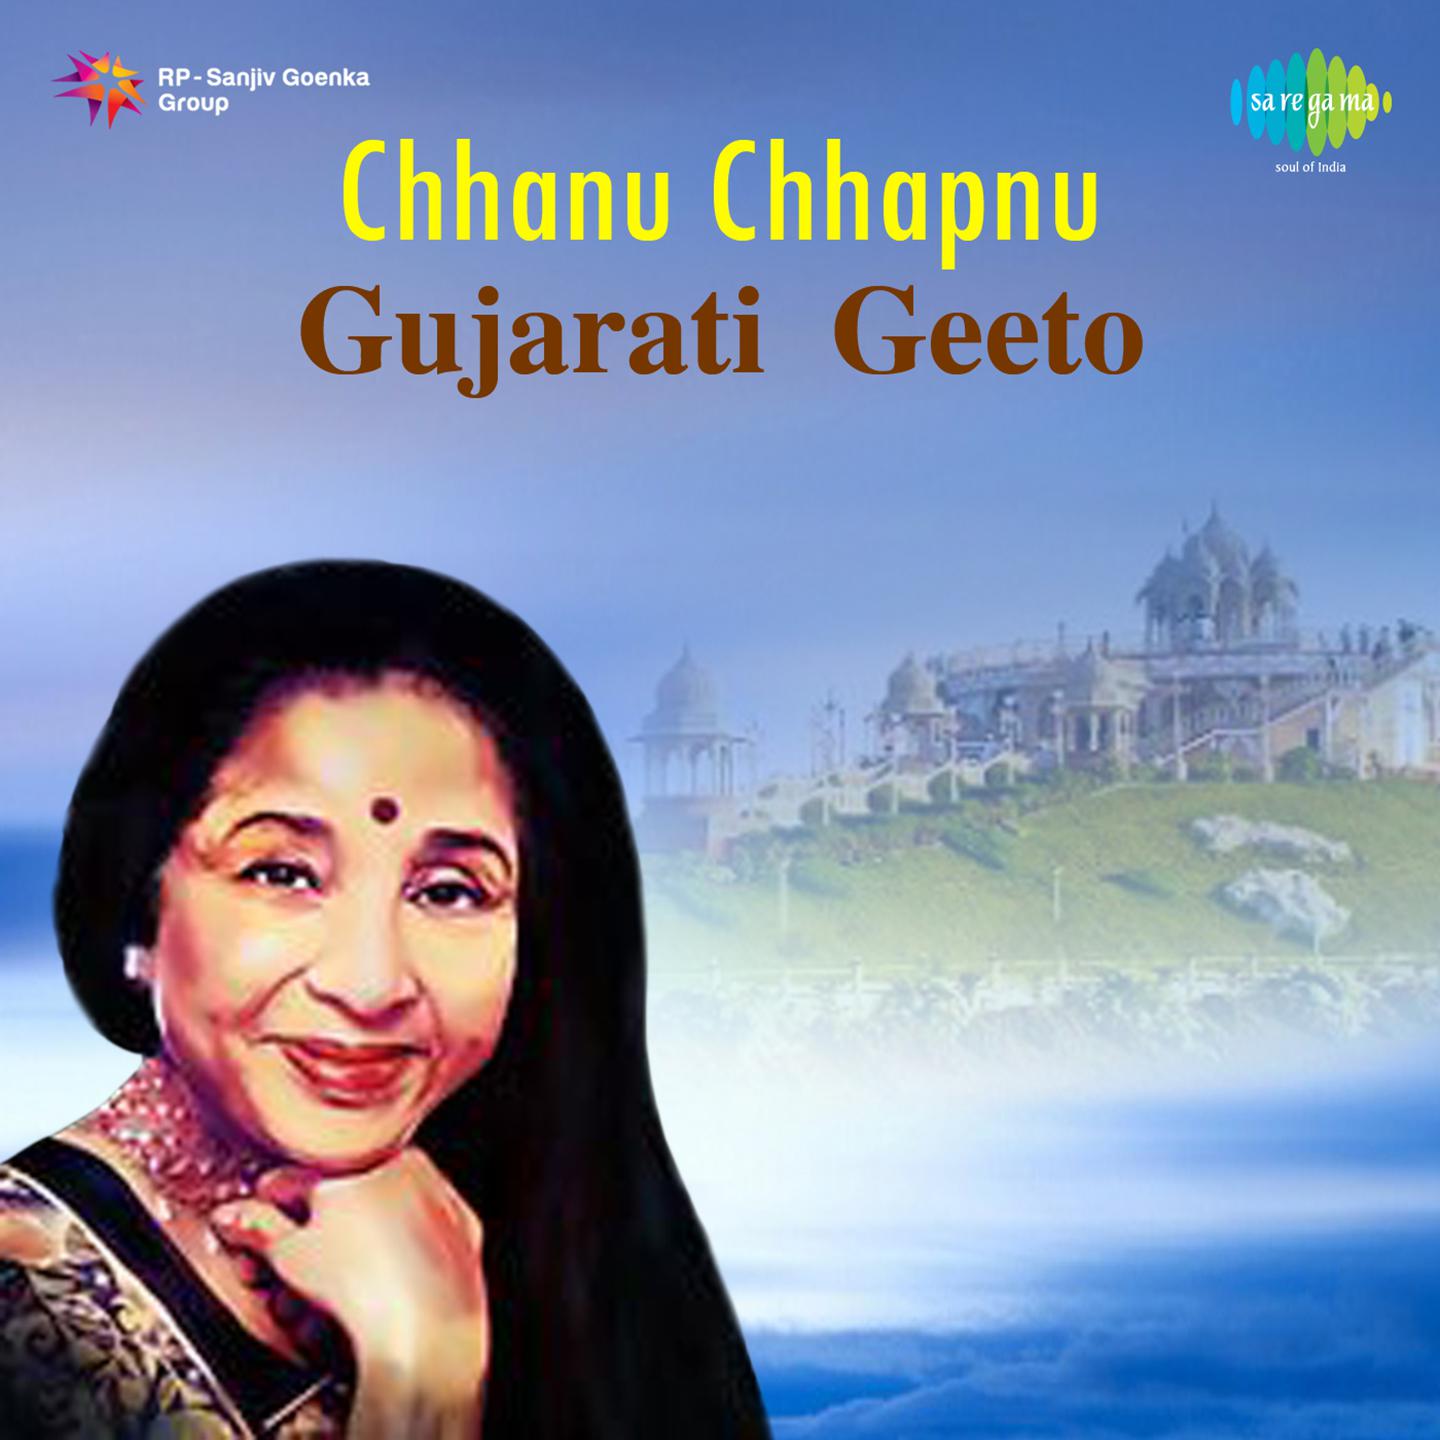 Chhanu Chhapnu Gujrati Geeto